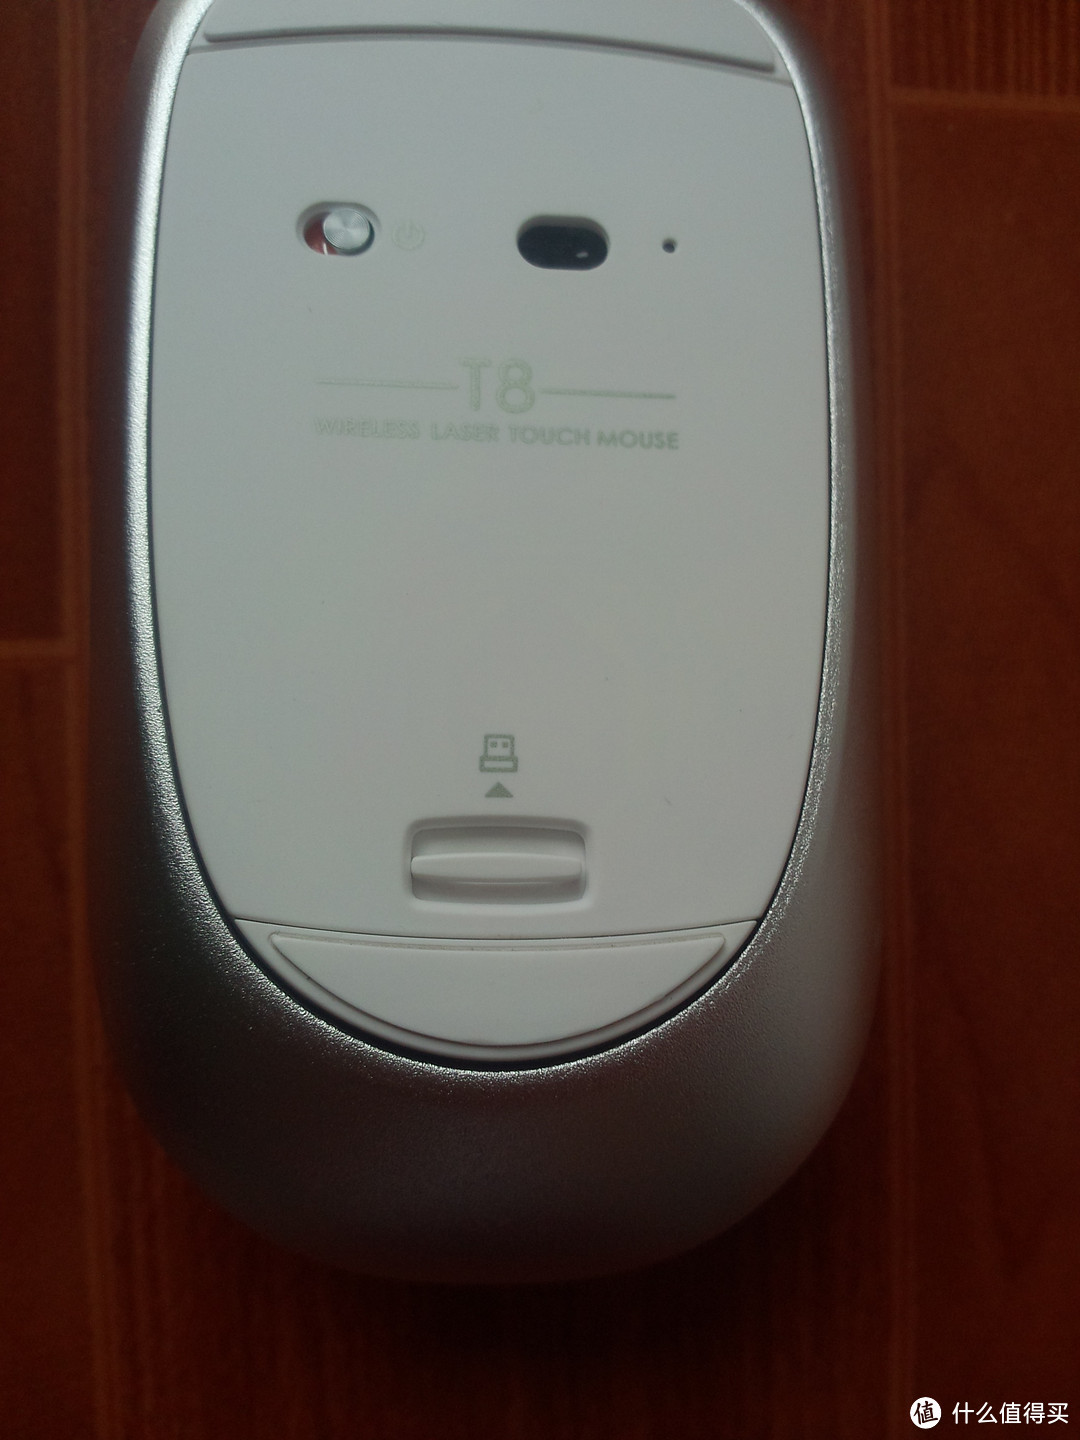 更有科技感的雷柏触控鼠标——雷柏T8无线触控鼠标体验